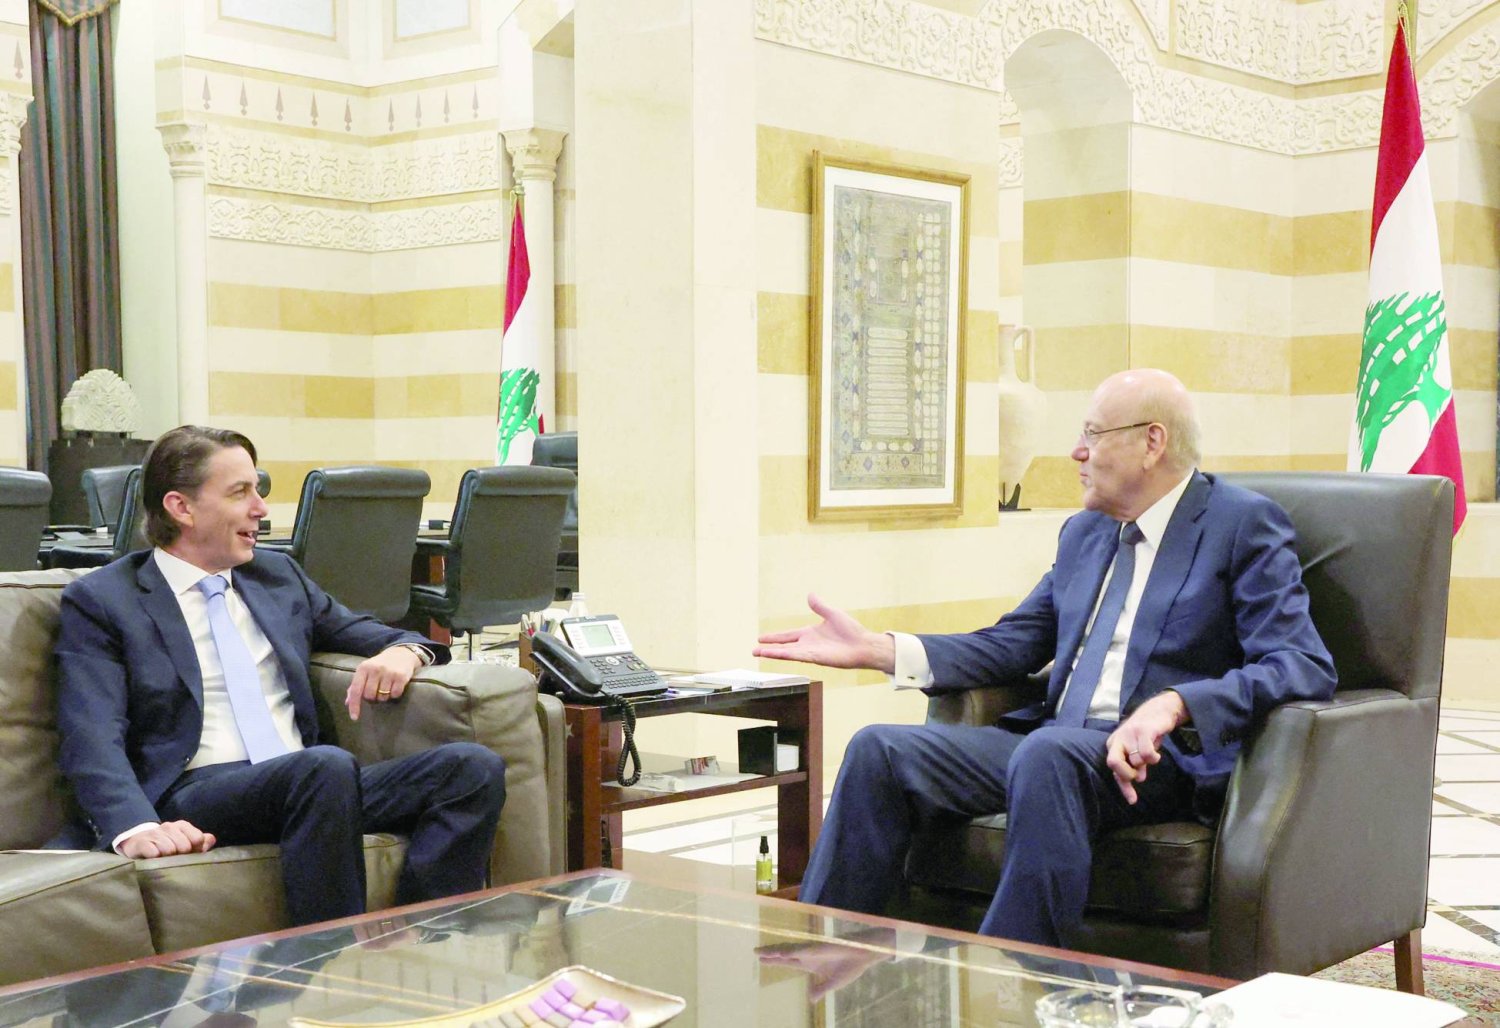 US Senior Advisor for Energy Security Amos Hochstein meets with Lebanon's caretaker Prime Minister Najib Mikati in Beirut, Lebanon June 14, 2022. REUTERS/Mohamed Azakir/File Photo